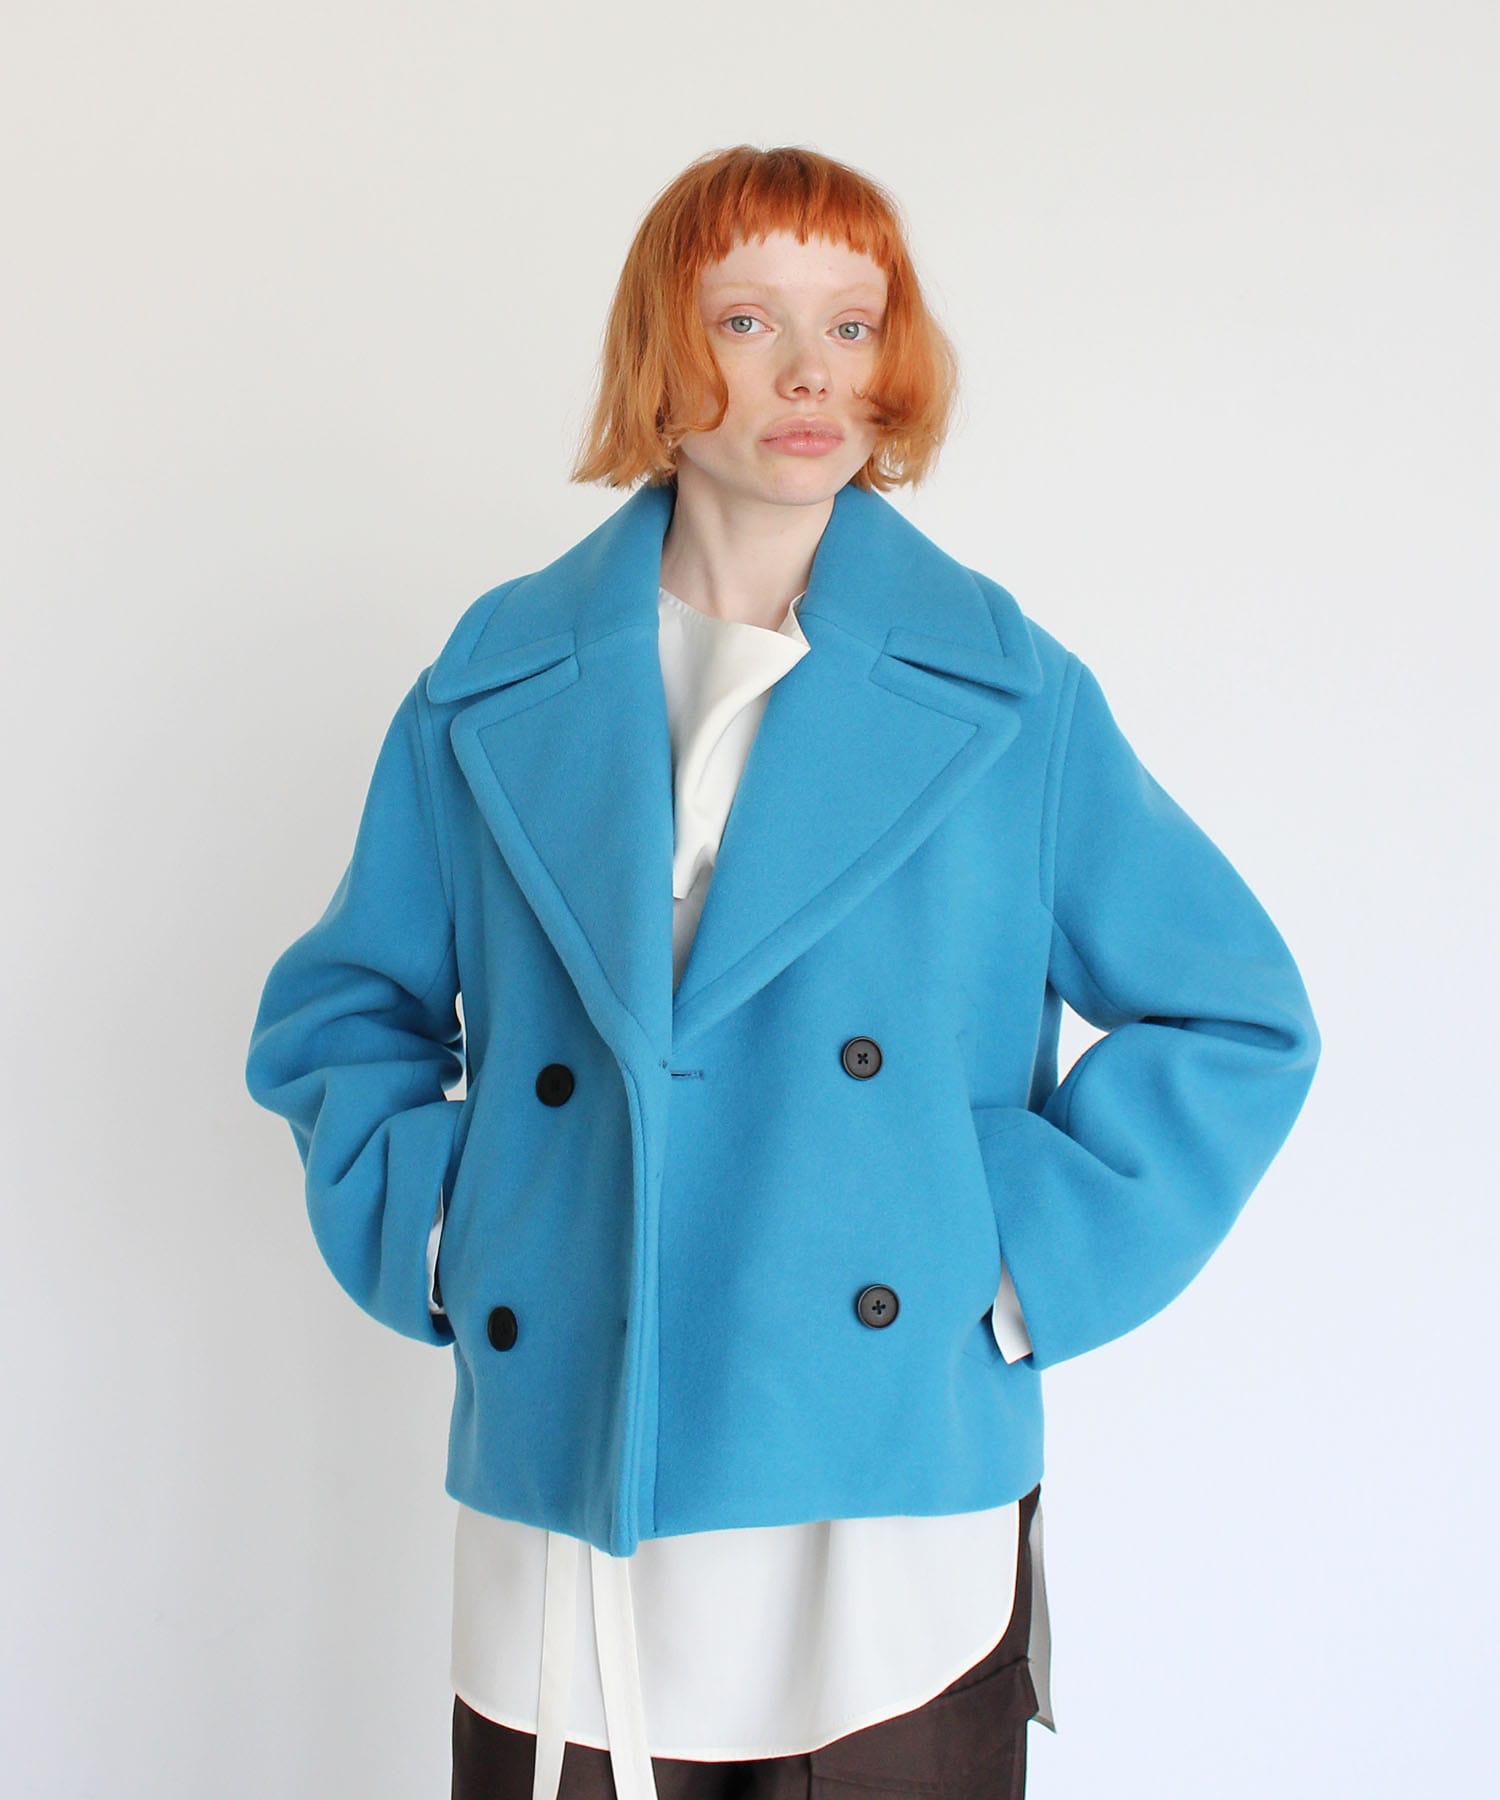 wool pile melton color P coat